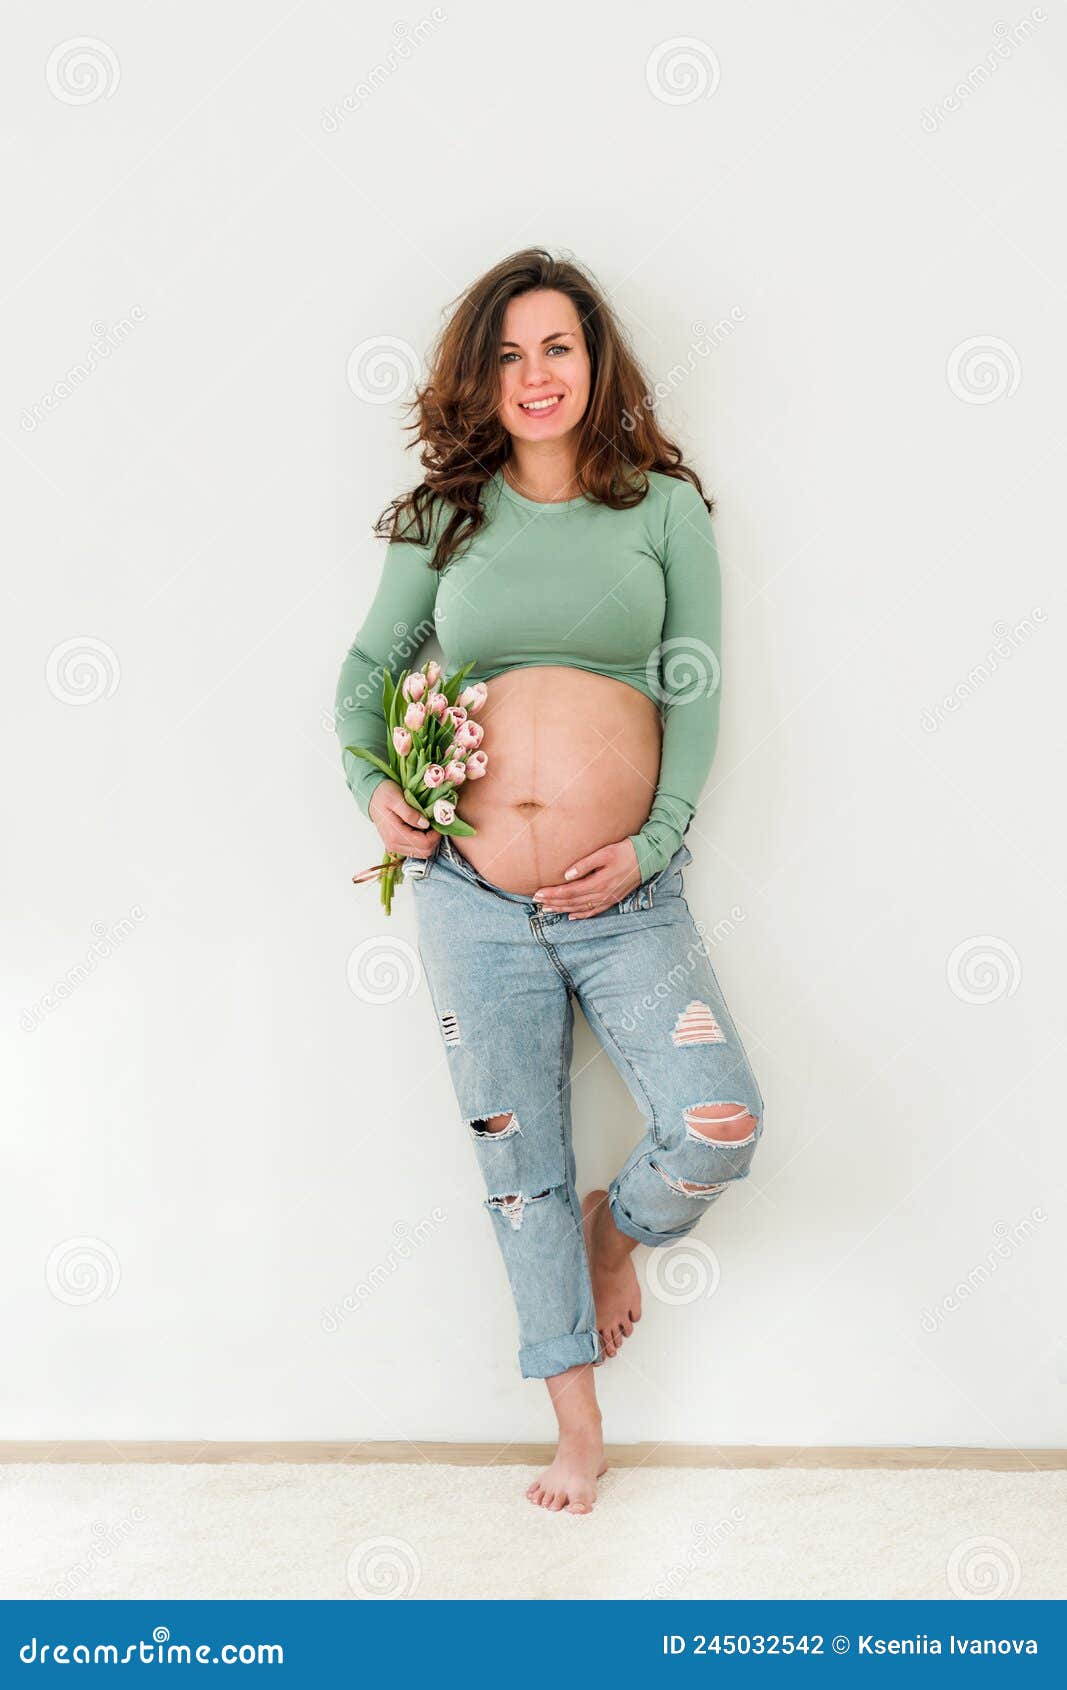 https://thumbs.dreamstime.com/z/bella-joven-mujer-de-brunette-embarazada-vestida-con-ropa-moderna-en-habitaci%C3%B3n-blanca-el-concepto-maternidad-y-embarazo-245032542.jpg